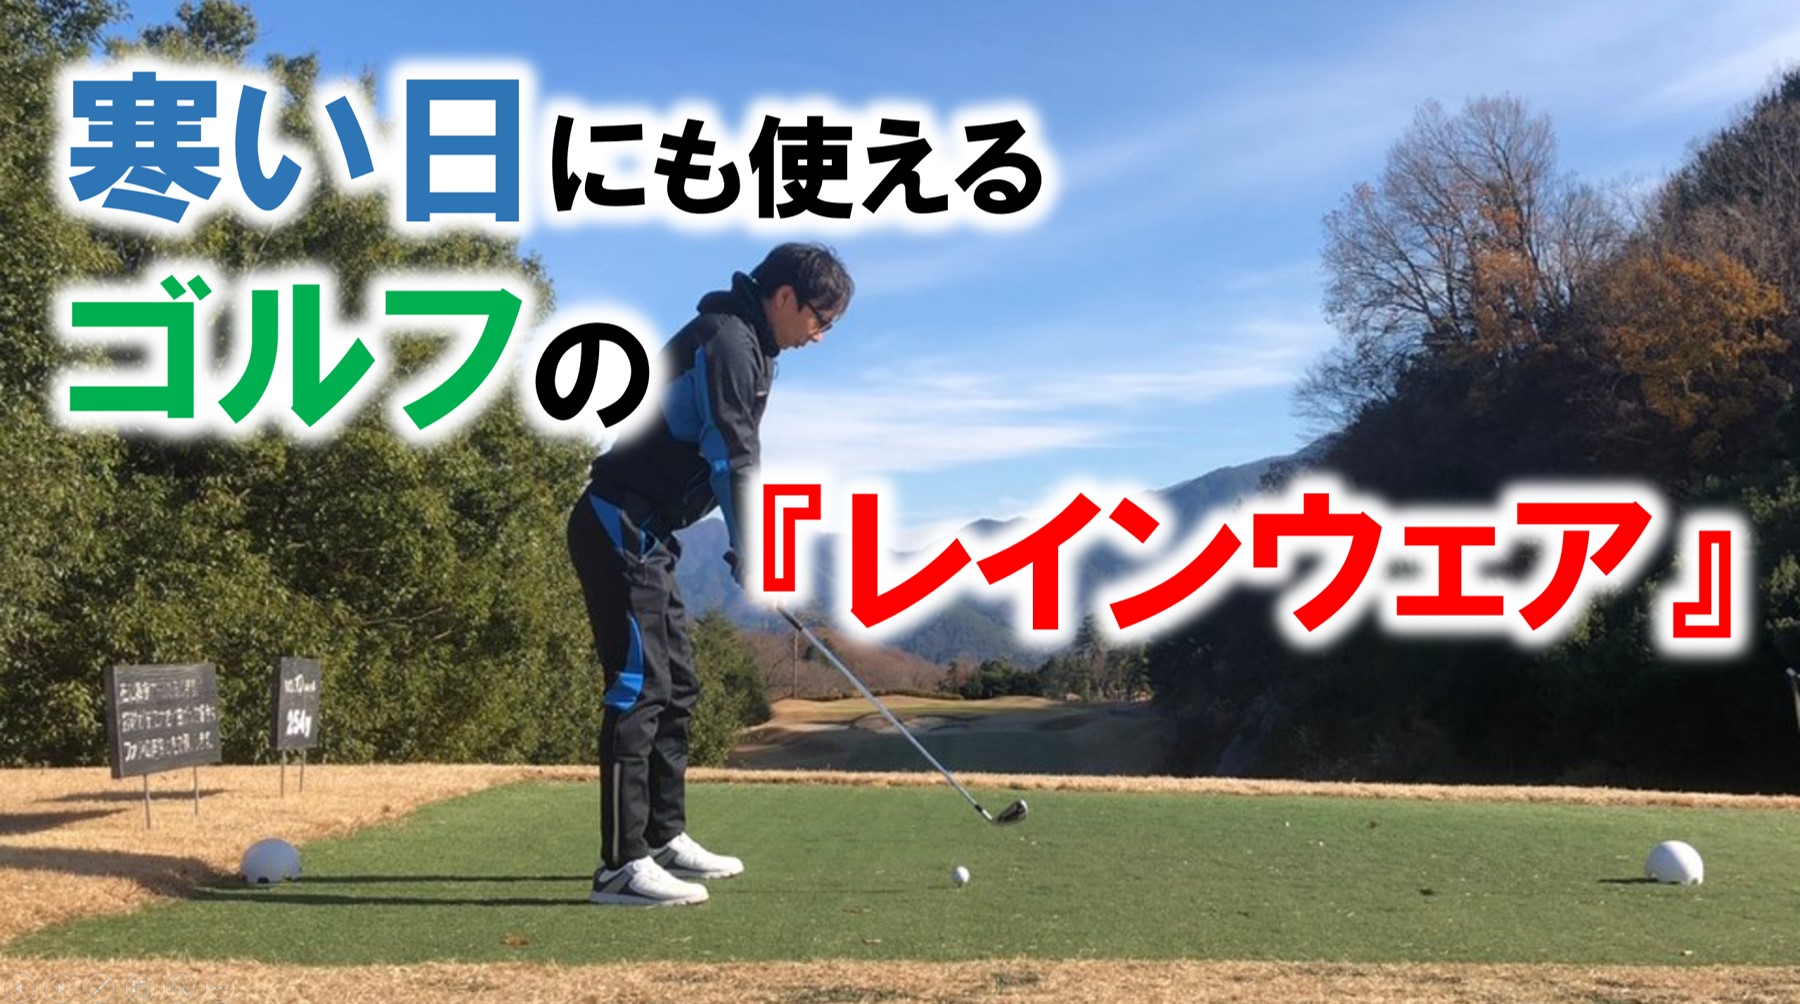 ゴルフレインウェア【雨の日  寒い日】どっちも使える!? | メディカル×ゴルフ